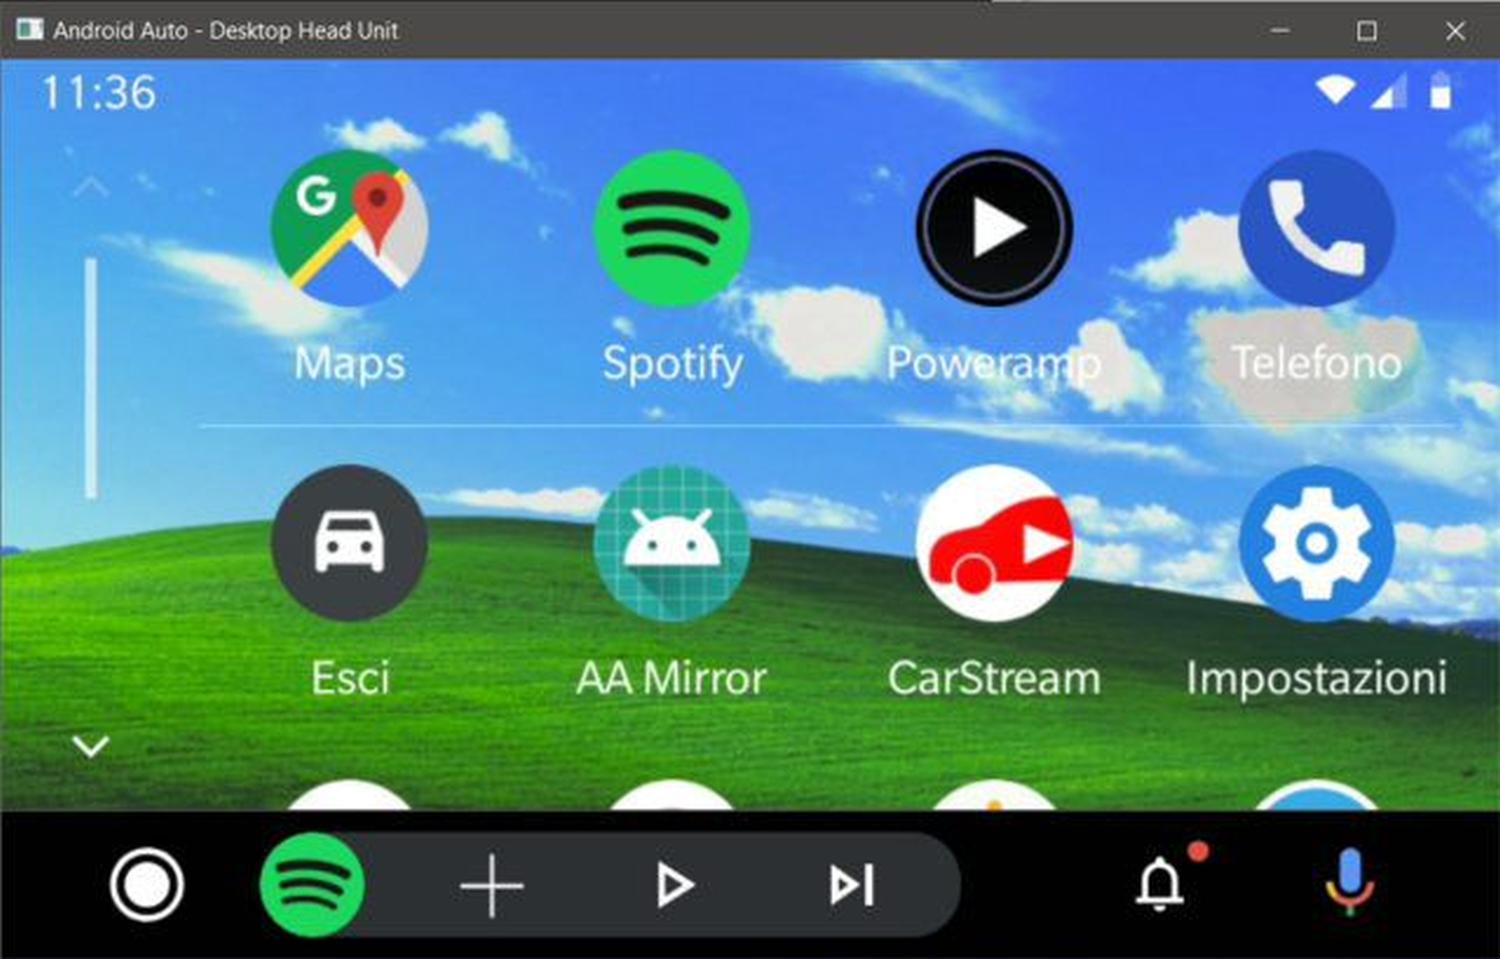 Android Auto Ein Eigener Wallpaper So Lasst Sich Das Hintergrundbild Der Infotainment Plattform Andern Gwb